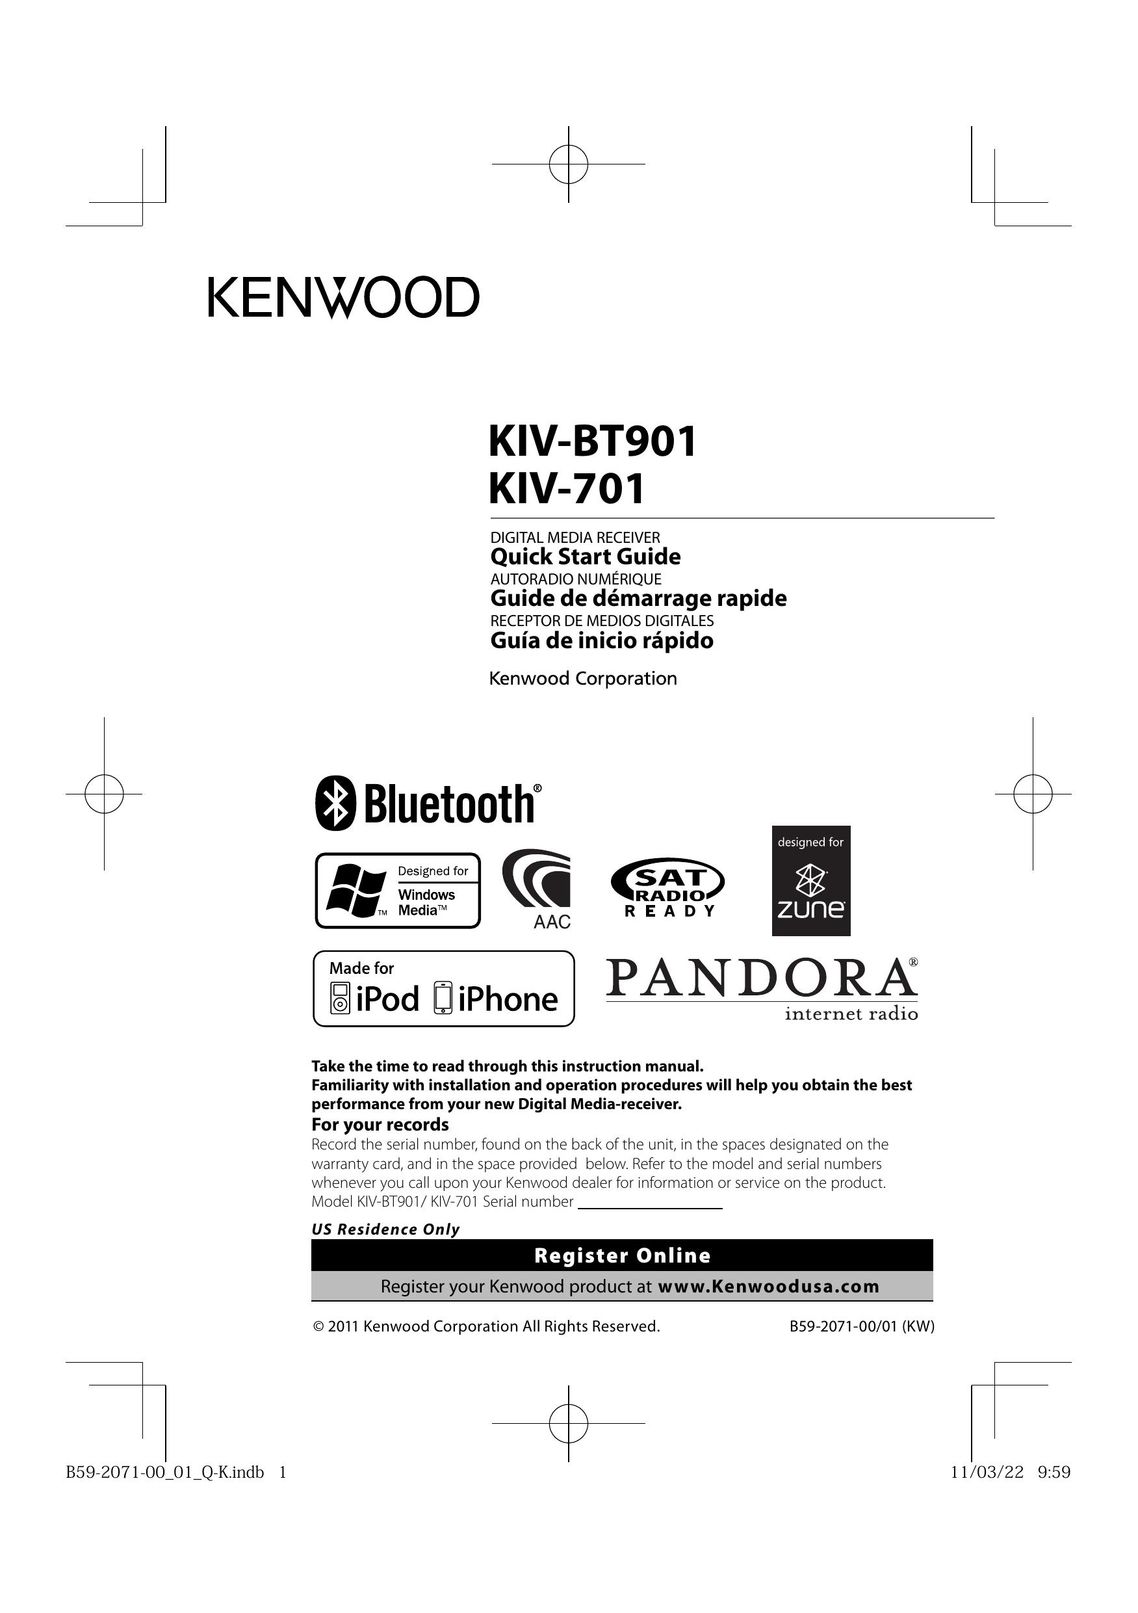 Kenwood KIV-BT901 Satellite Radio User Manual